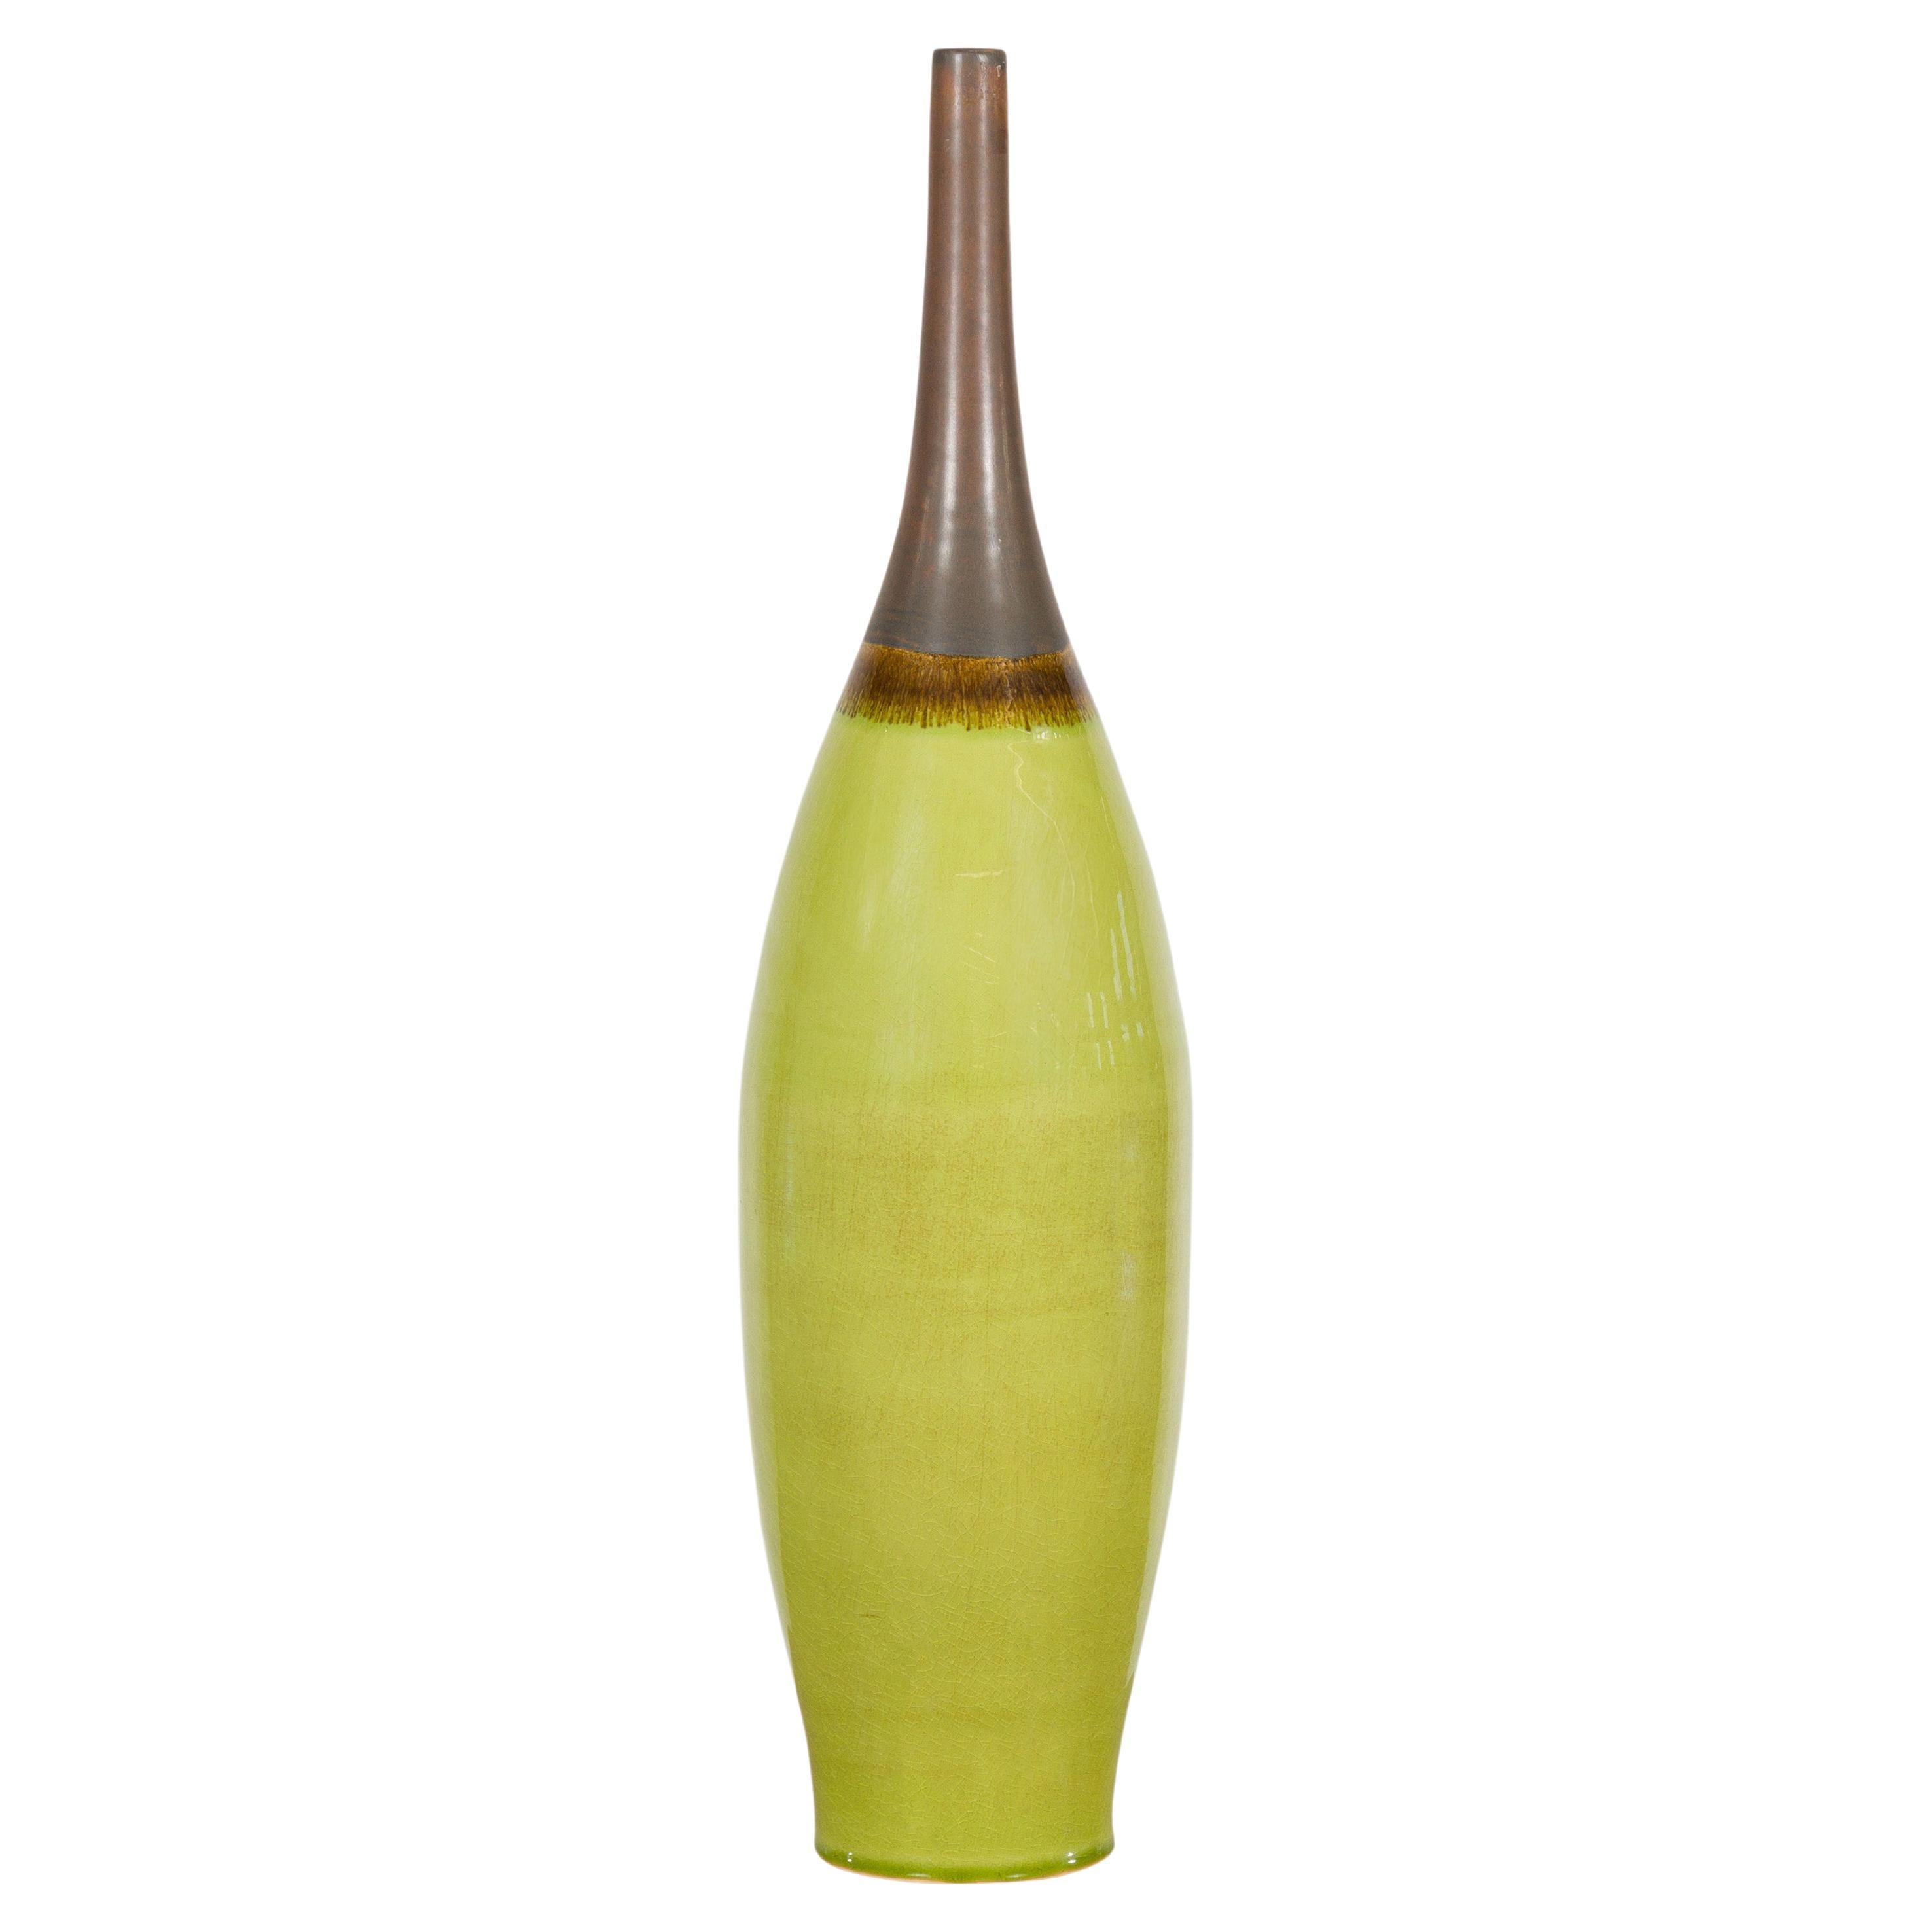 Artisan Handmade Lime Green Glazed Ceramic Vase with Brown Neck